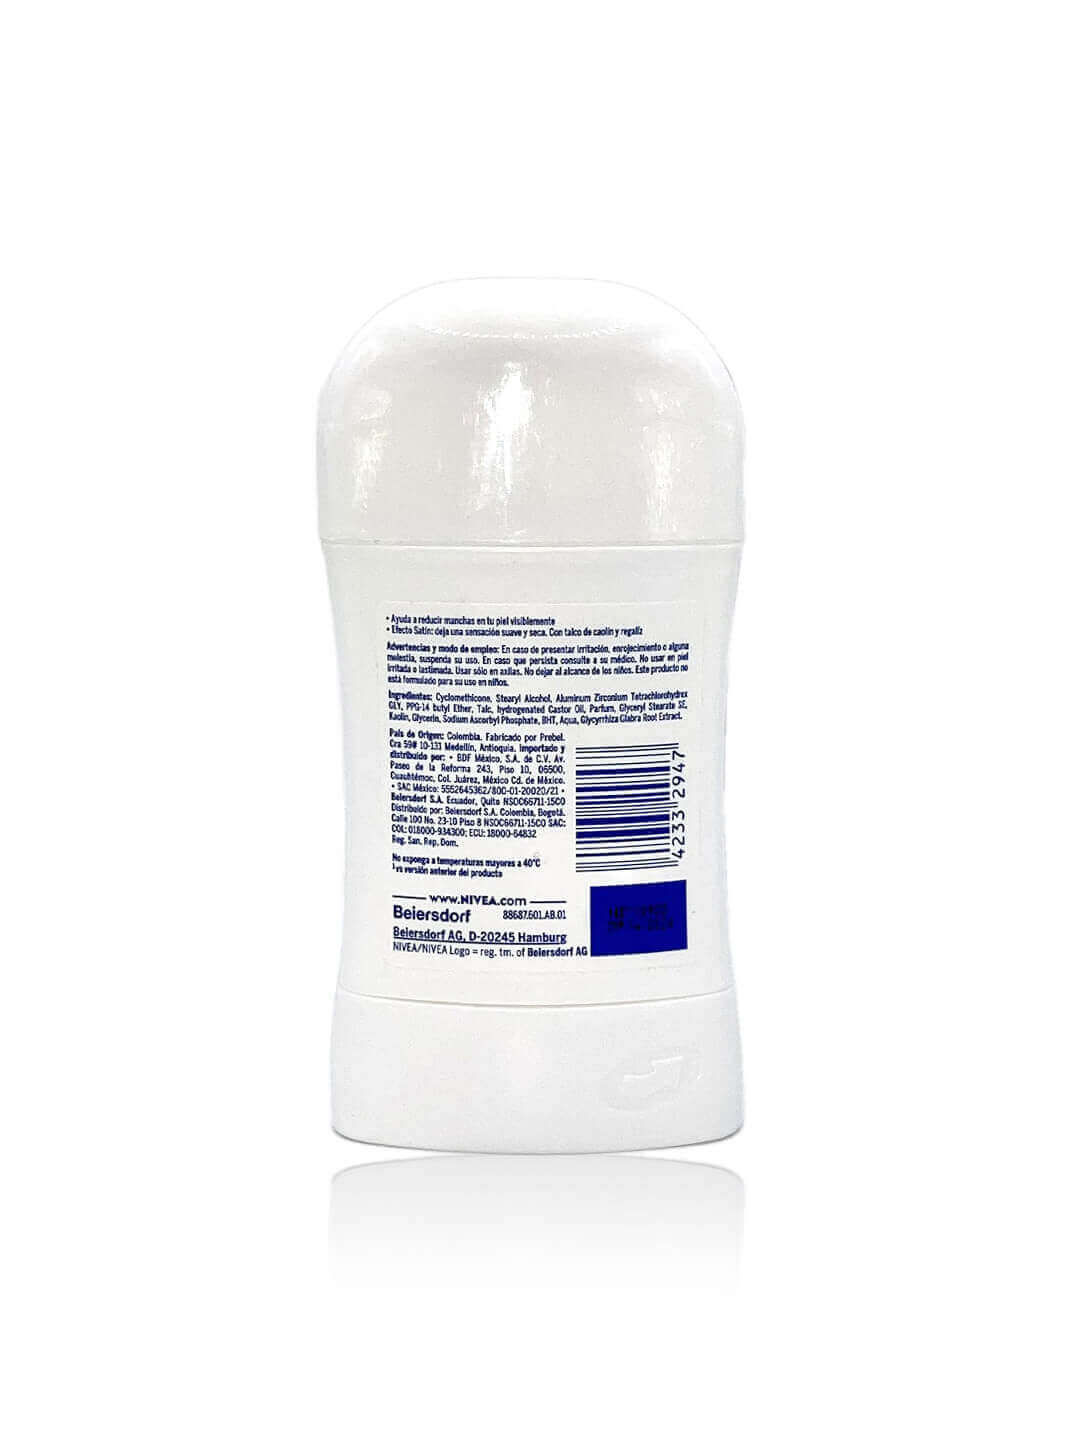 Desodorante NIVEA Antitranspirante barra Aclarado Natural.